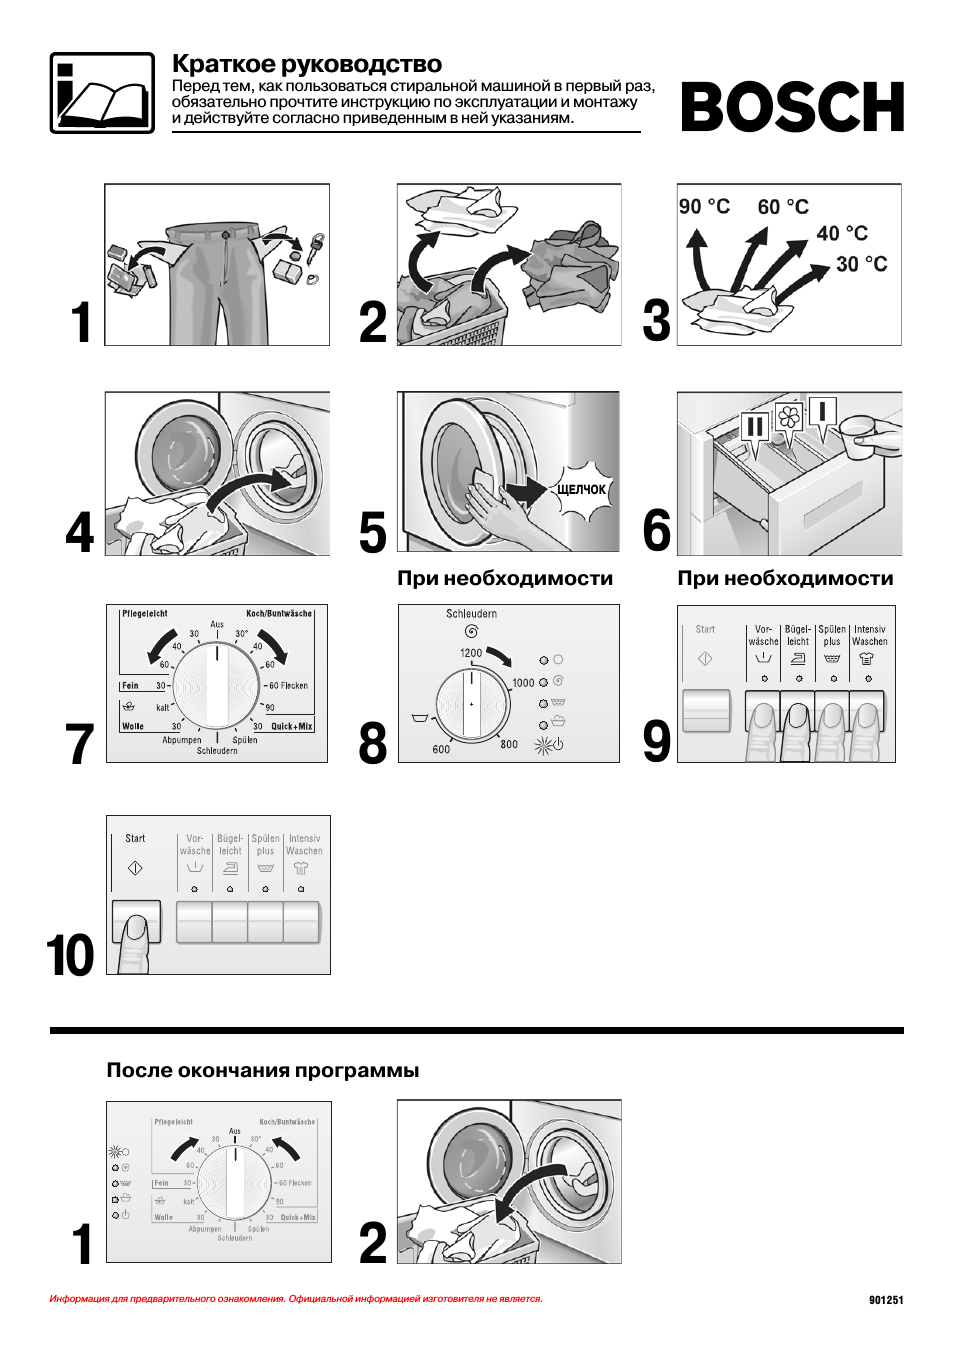 Как правильно пользоваться стиральной машиной: куда прибавлять кондиционер и как правильно стирать